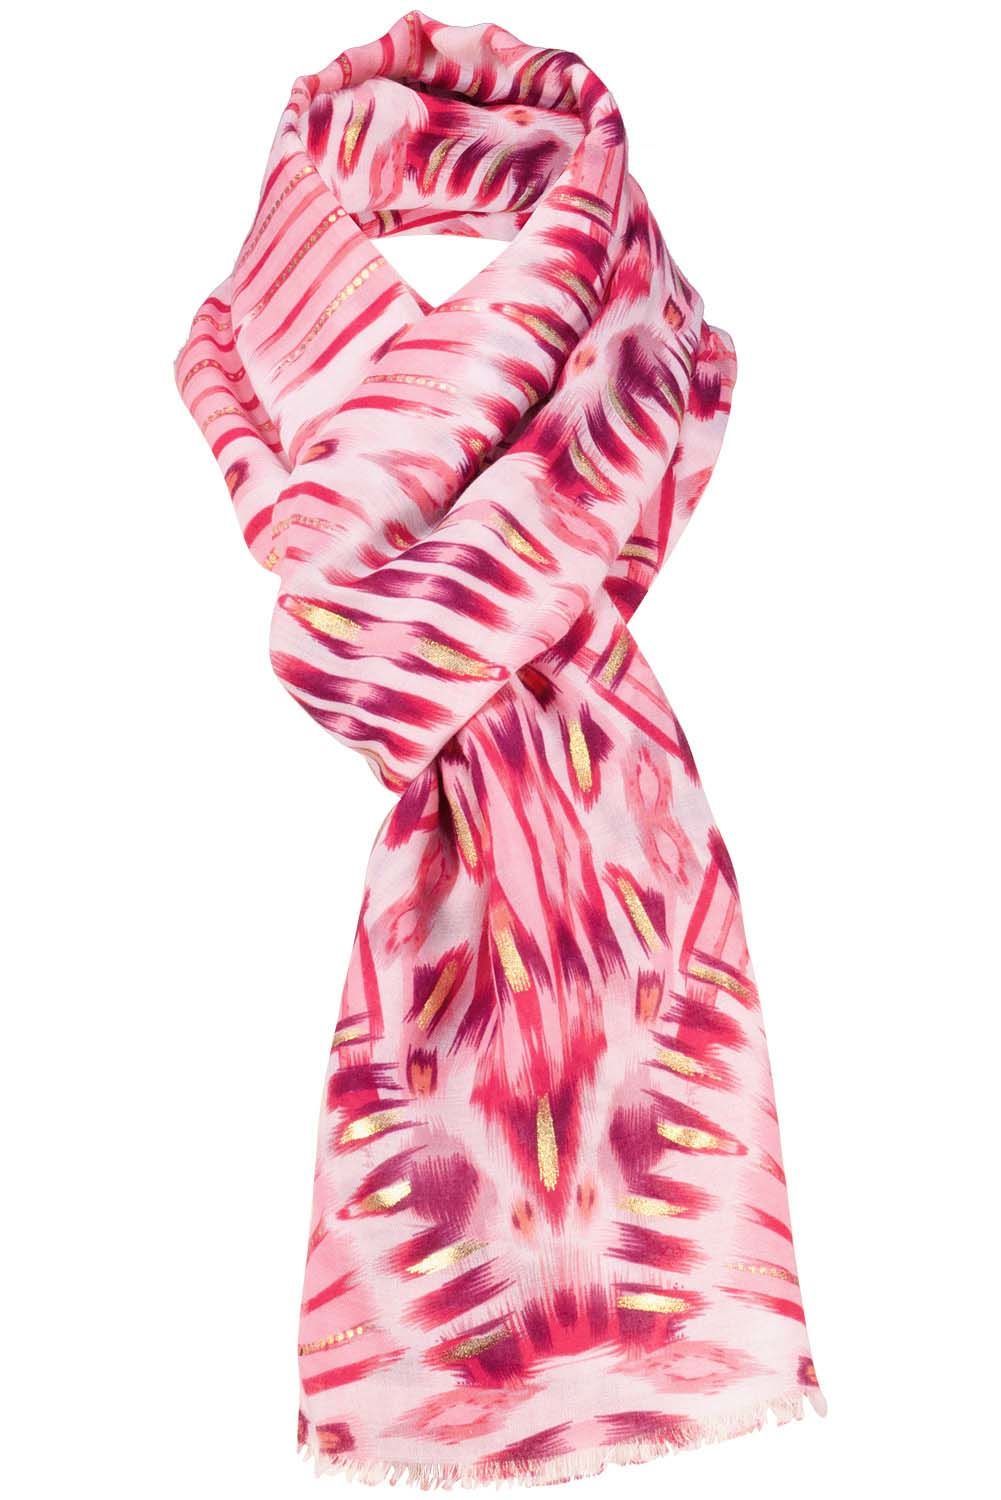 shawl Roze